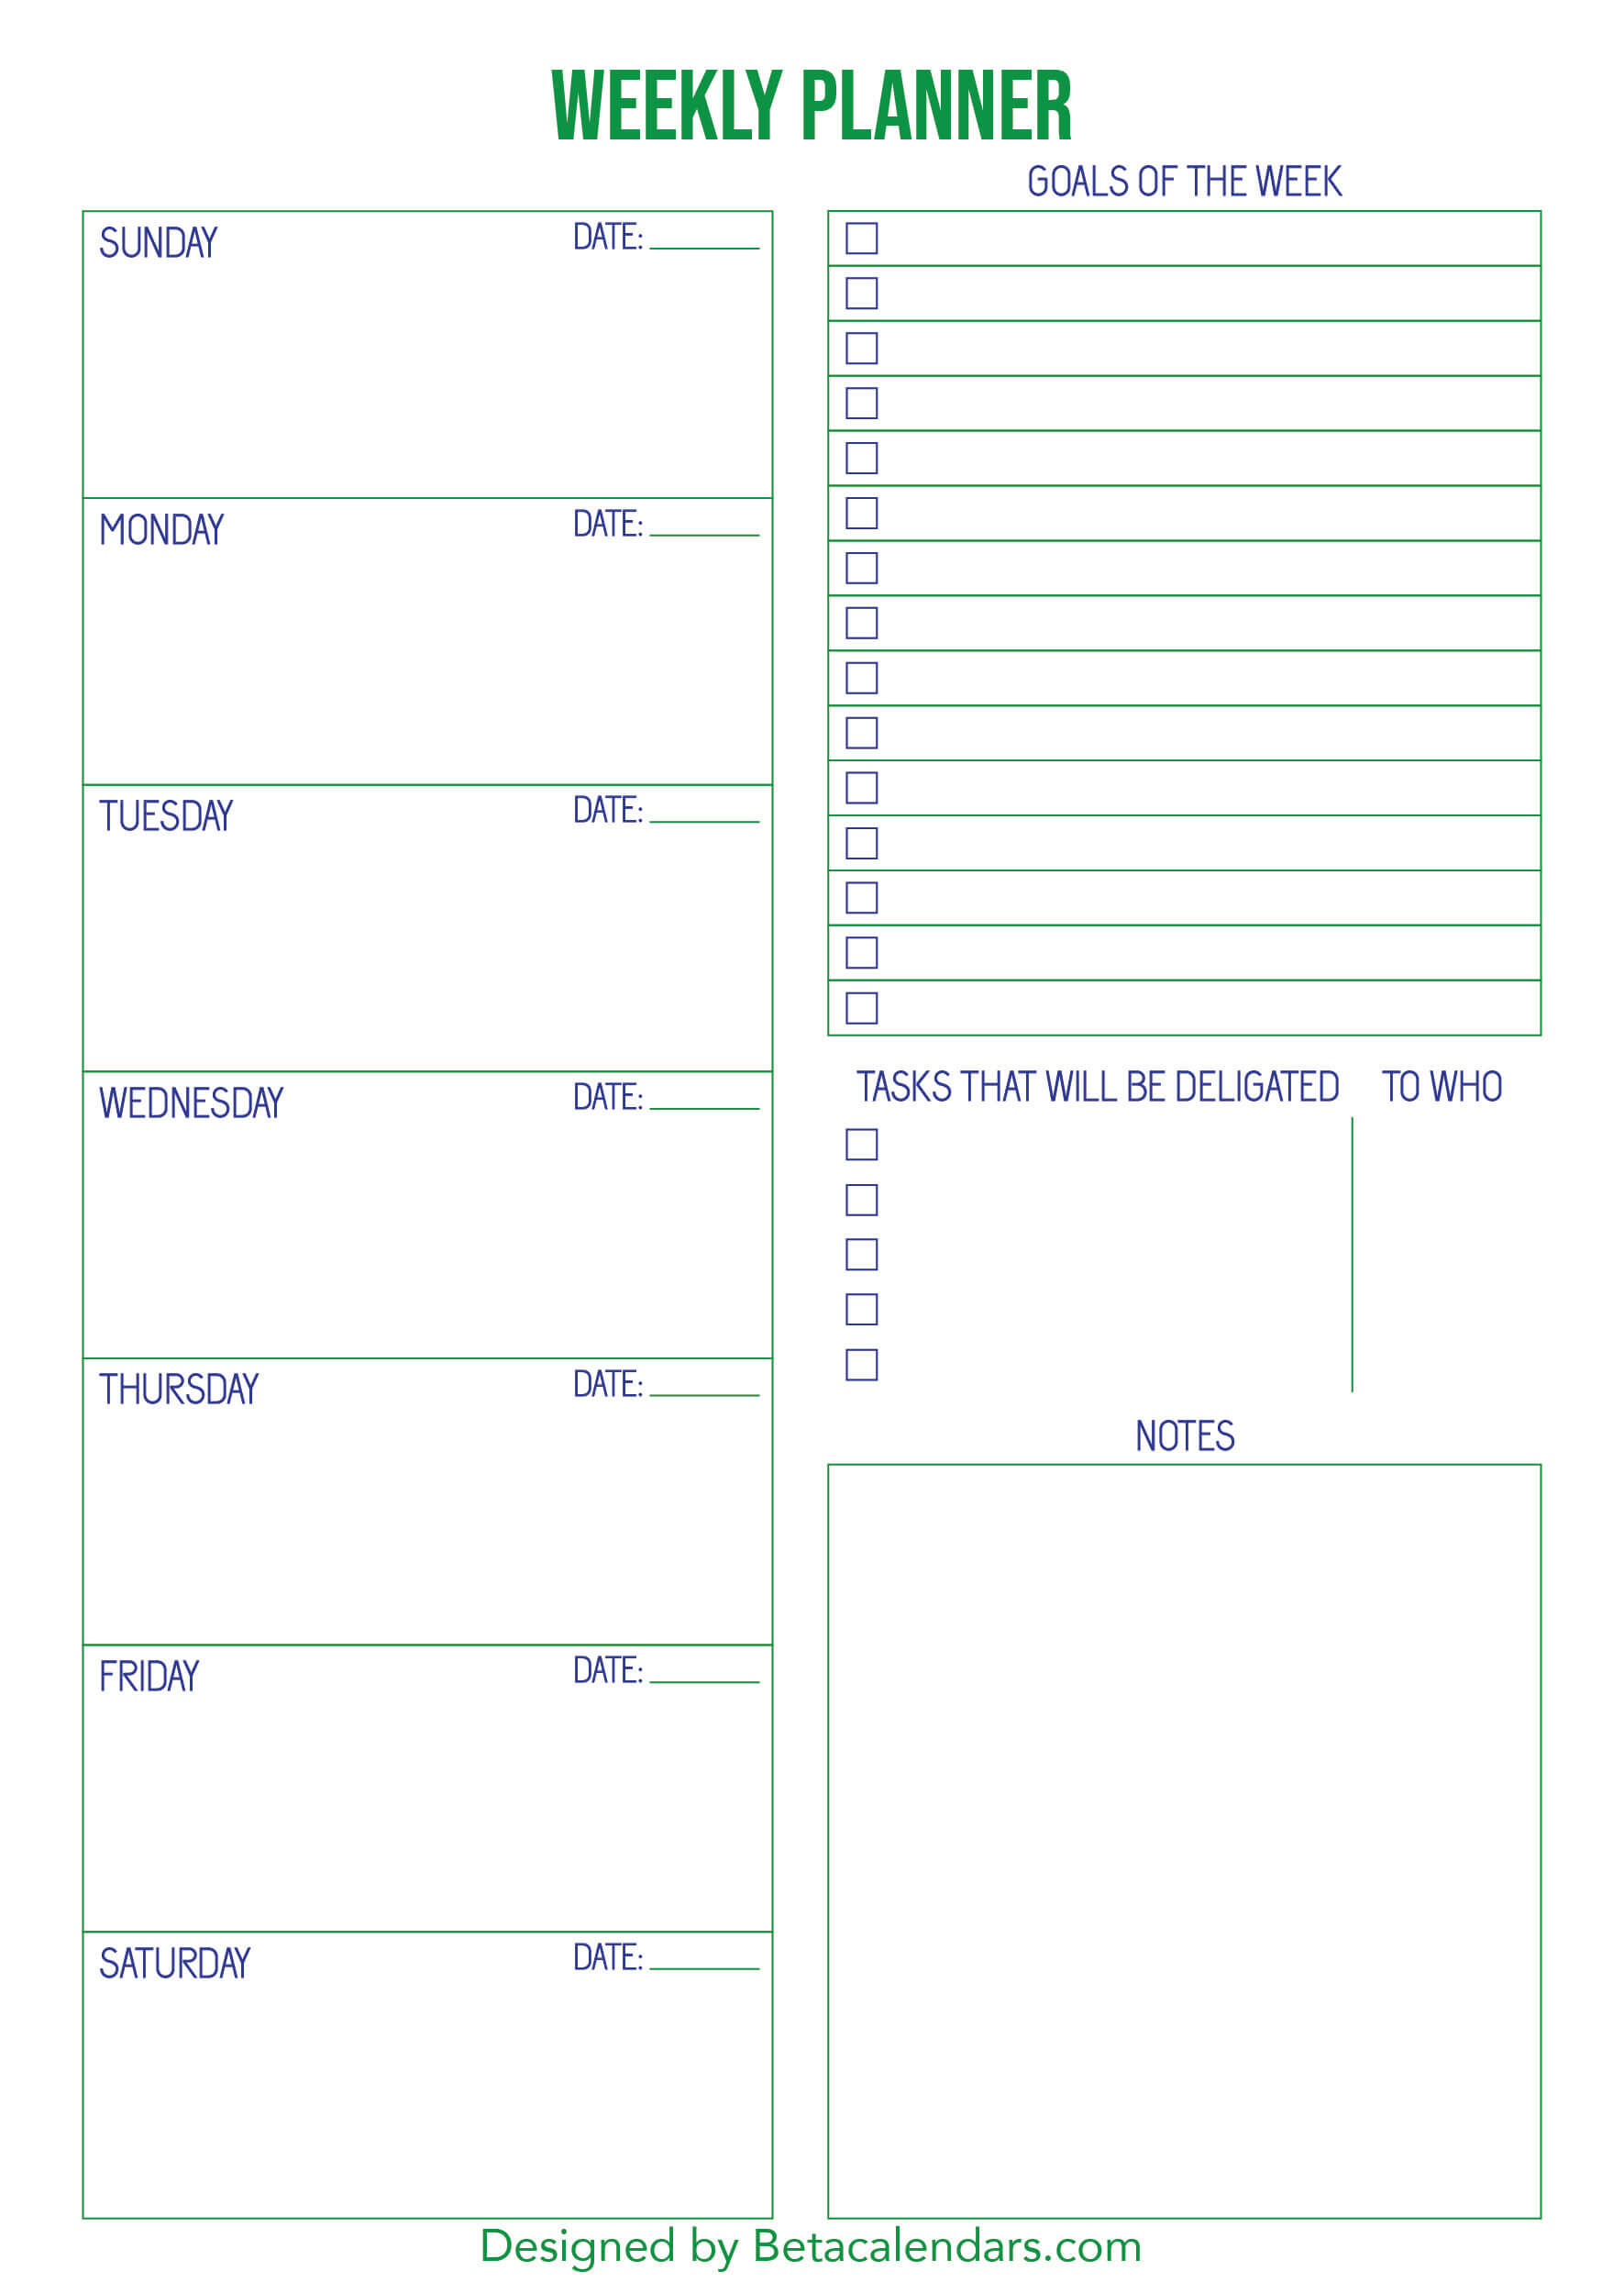 Free Printable Weekly Planner - Beta Calendars